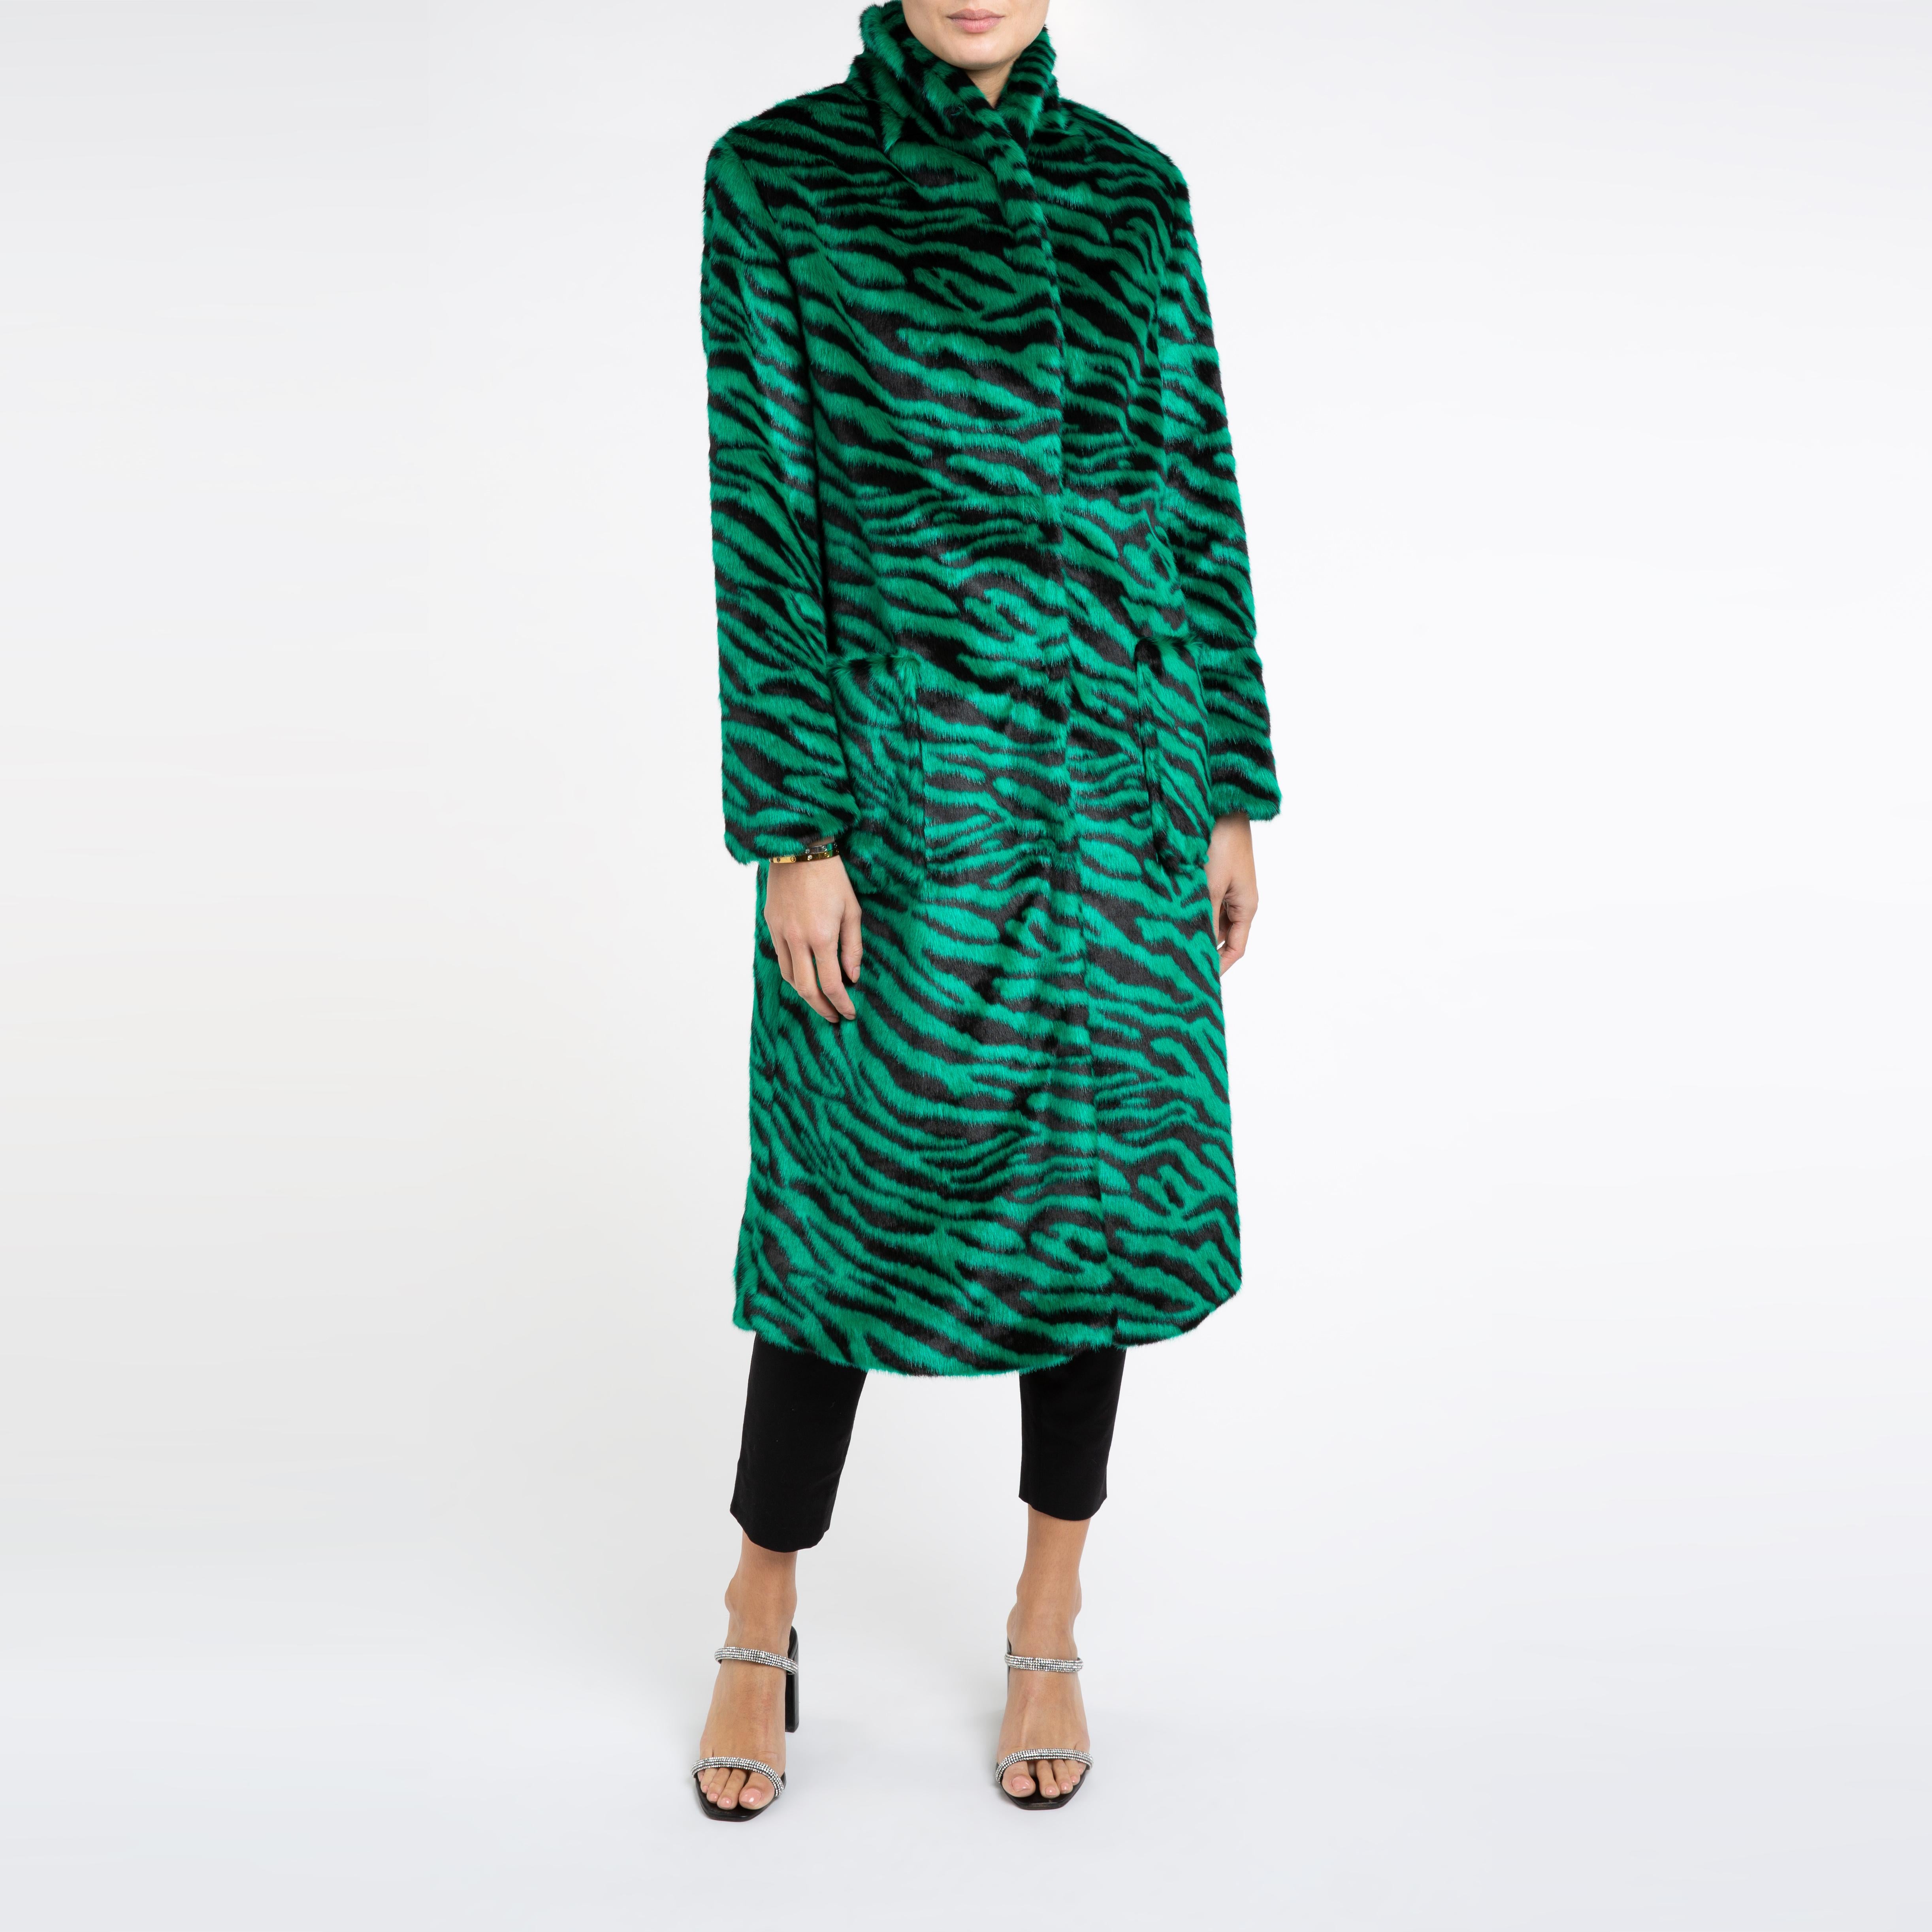 Verheyen London Esmeralda Faux Fur Coat in Emerald Green Zebra Print size uk 8 For Sale 1